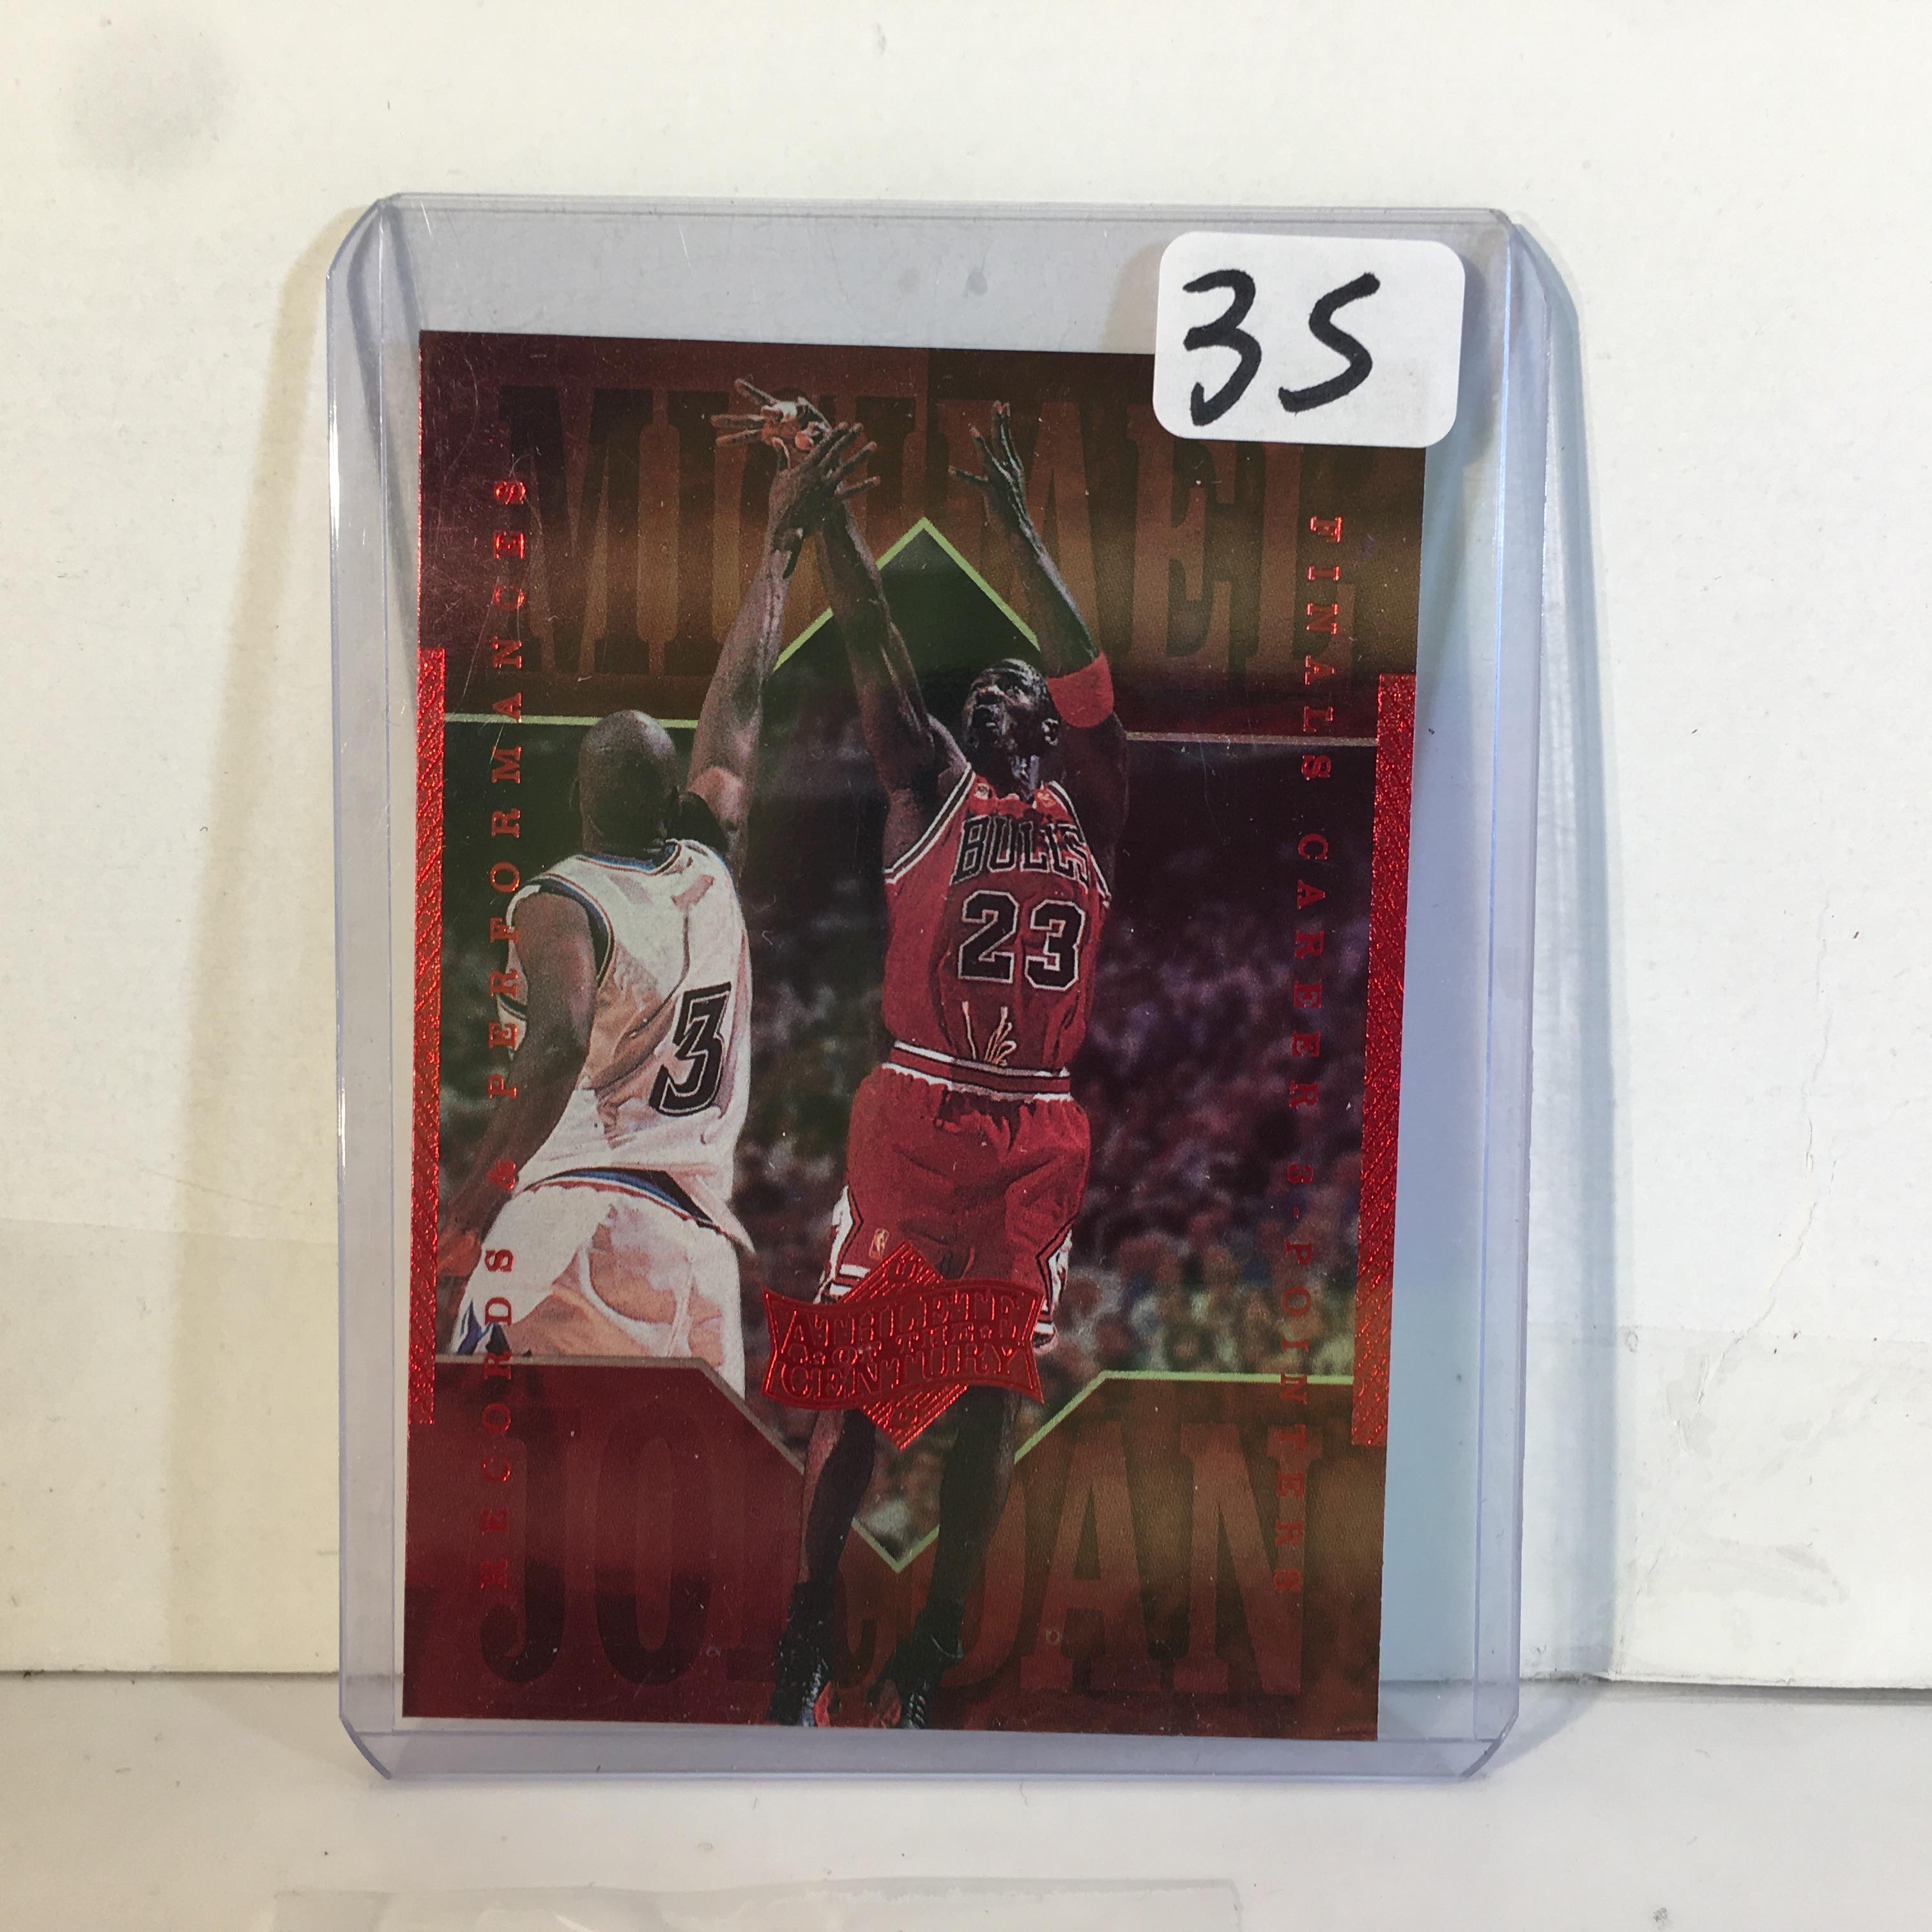 Collector 1999 Upper Deck NBA Basketball Sport Trading Card Michael Jordan #8 Basketball Sport Card